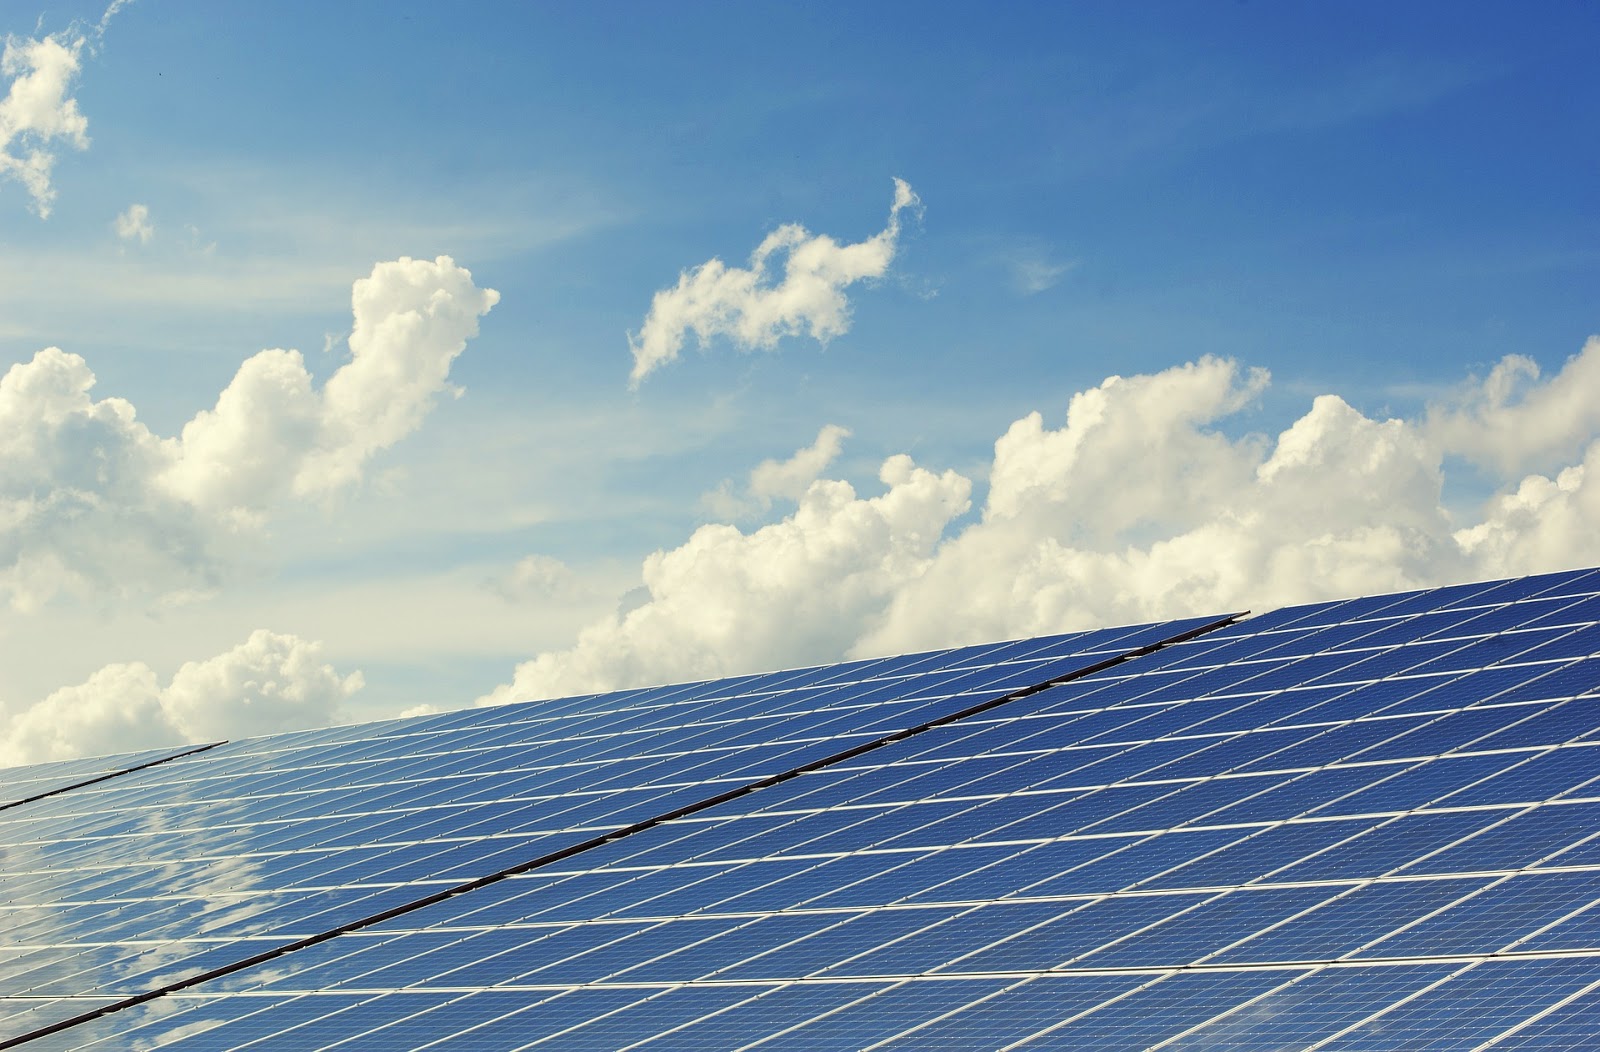 Rec Lanza Panel Solar De 72 Celulas Mas Potente Del Mundo Diariorenovables Energias Renovables Eolica Solar Fotovoltaica Baterias Movilidad Sostenible